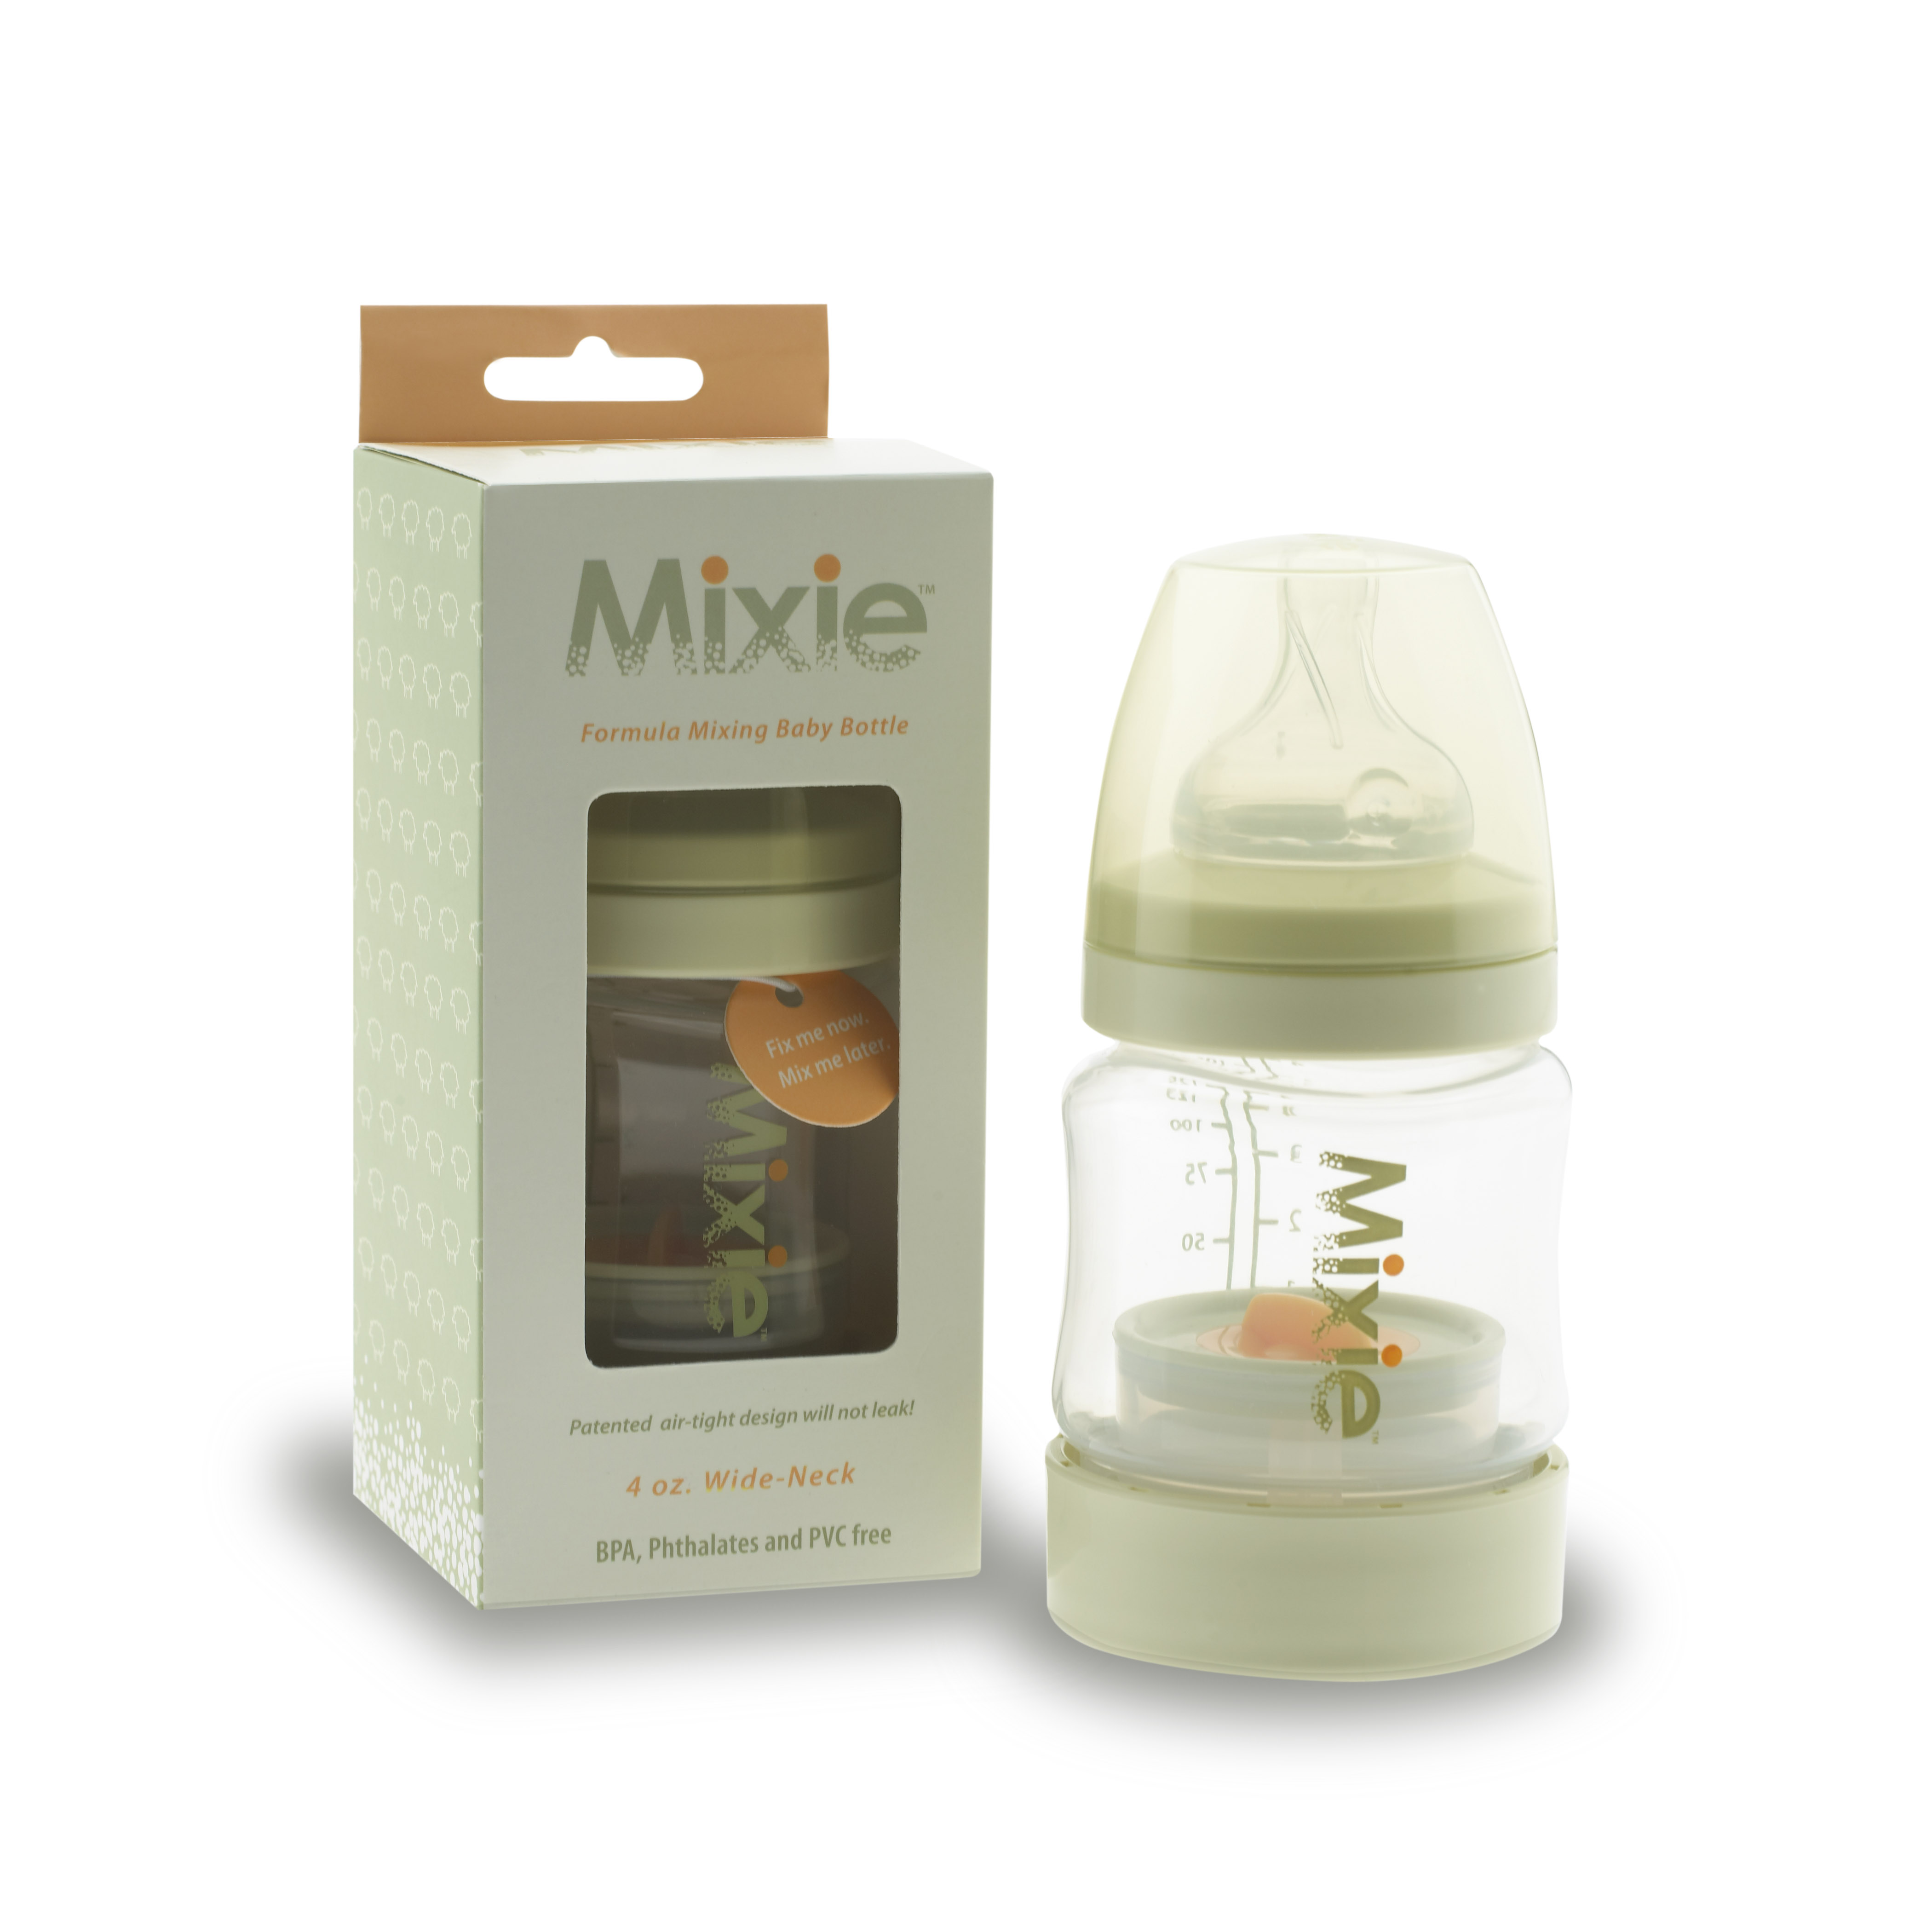 Mixie Formula-Mixing Baby Bottle